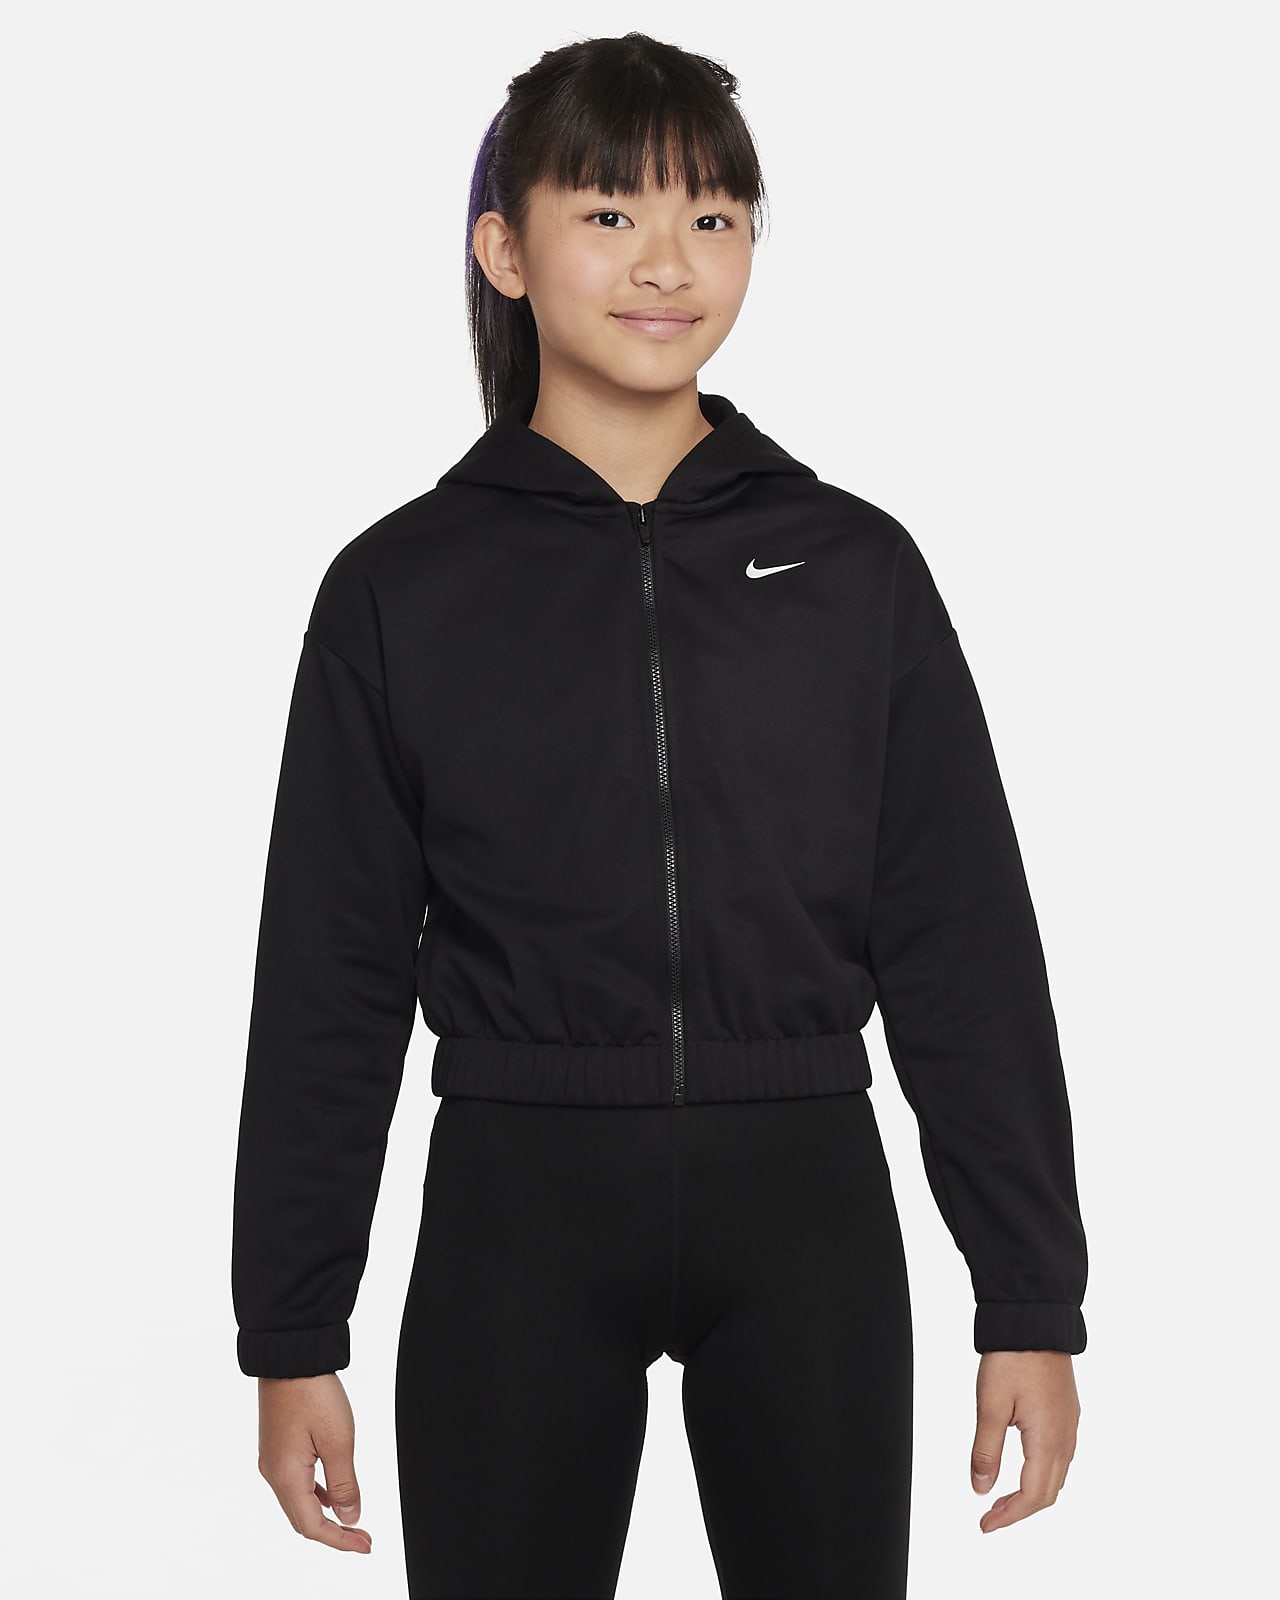 Nike Therma-FIT Trainings-Hoodie mit durchgehendem Reißverschluss für ältere Kinder (Mädchen)